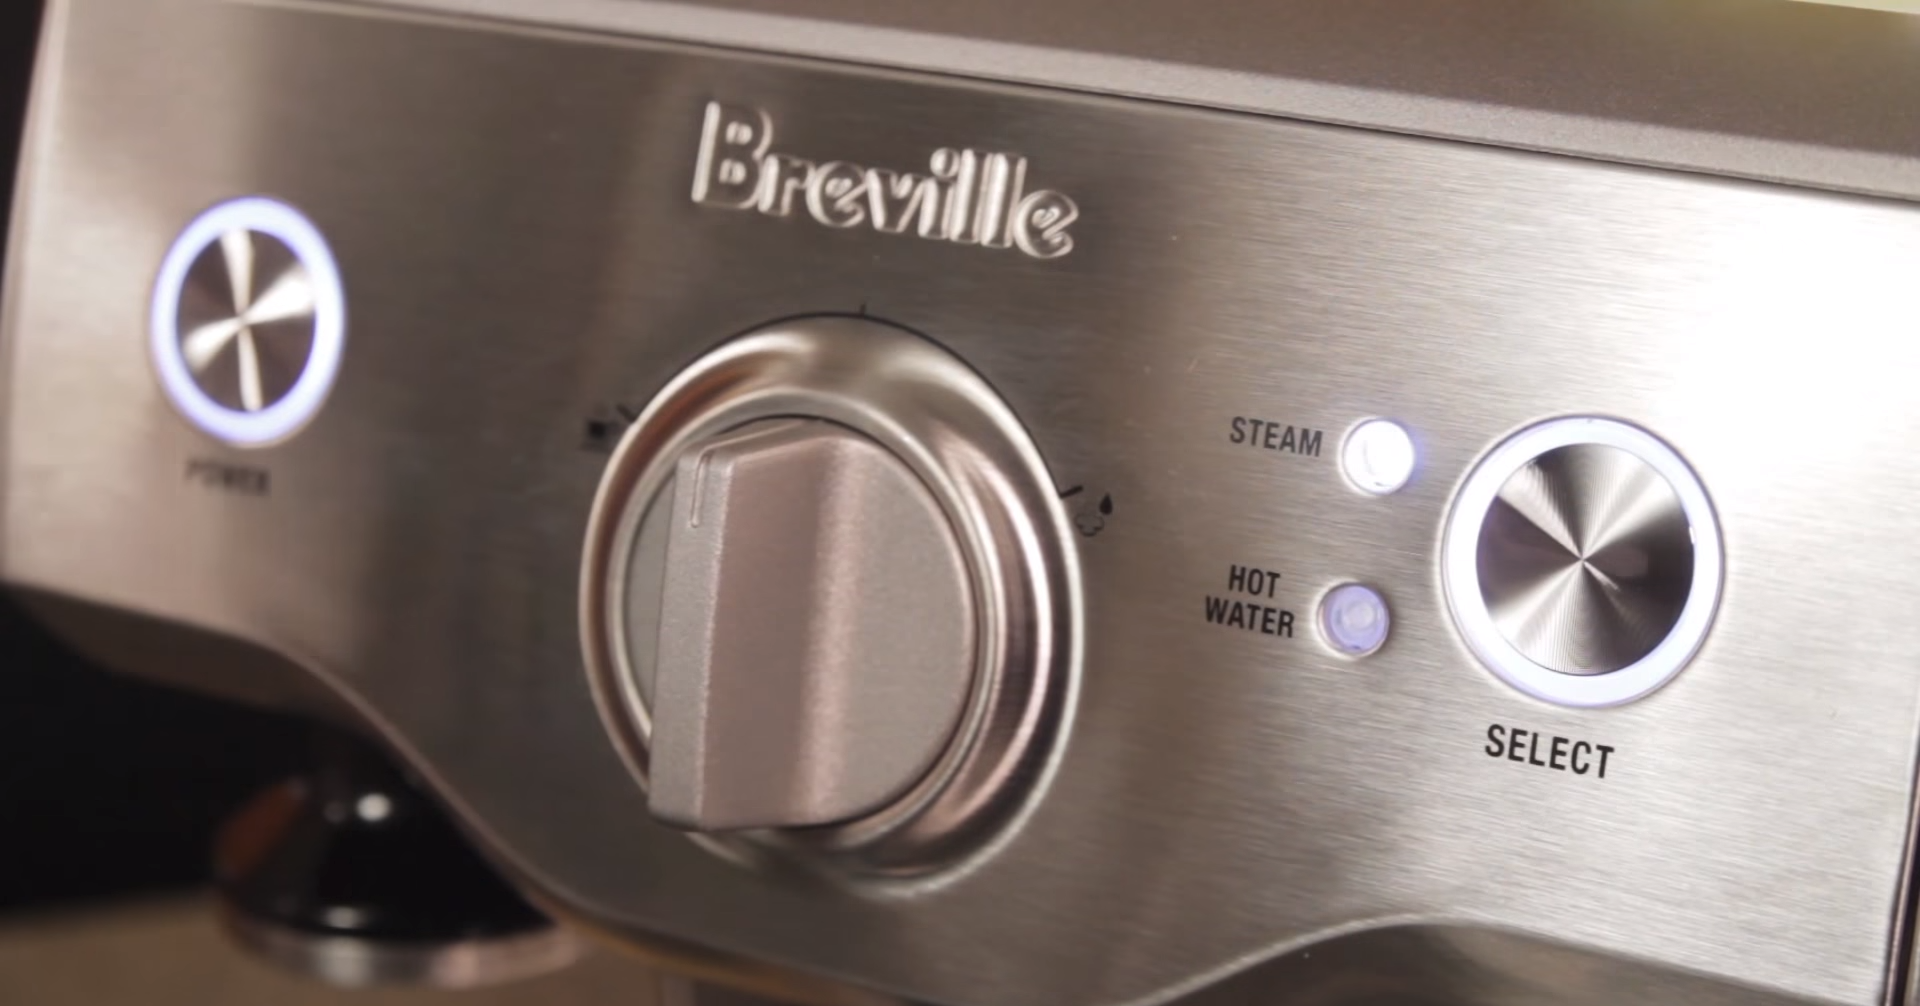 Our demo of the Breville Duo-Temp Pro espresso machine.